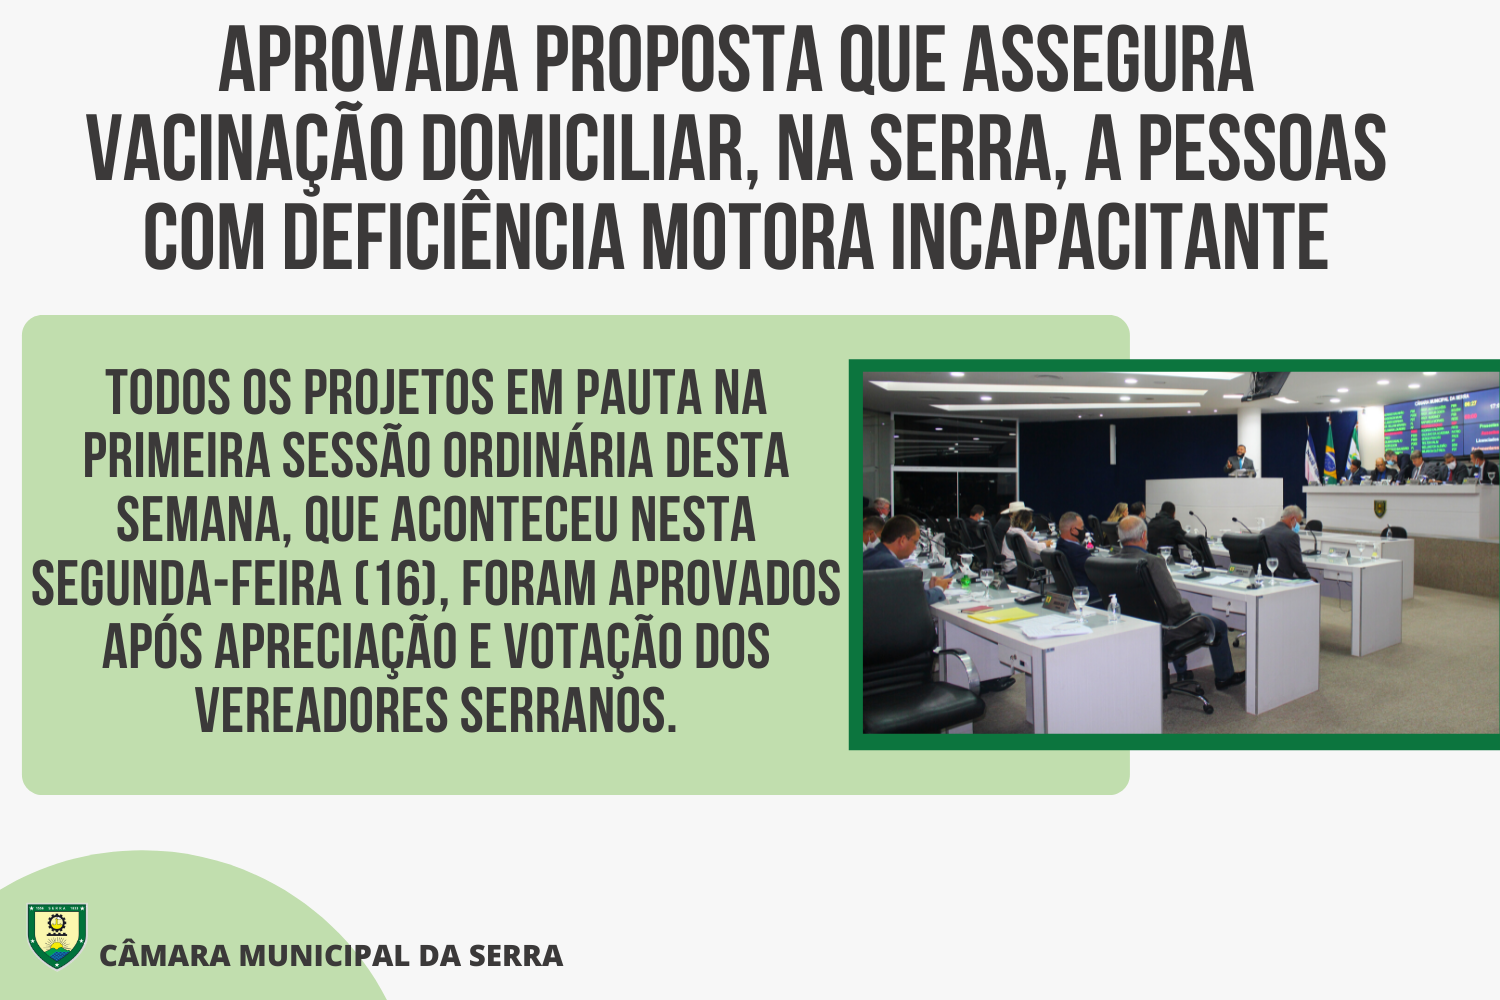 Aprovada proposta que assegura vacinação domiciliar, na Serra, a pessoas com deficiência motora incapacitante.